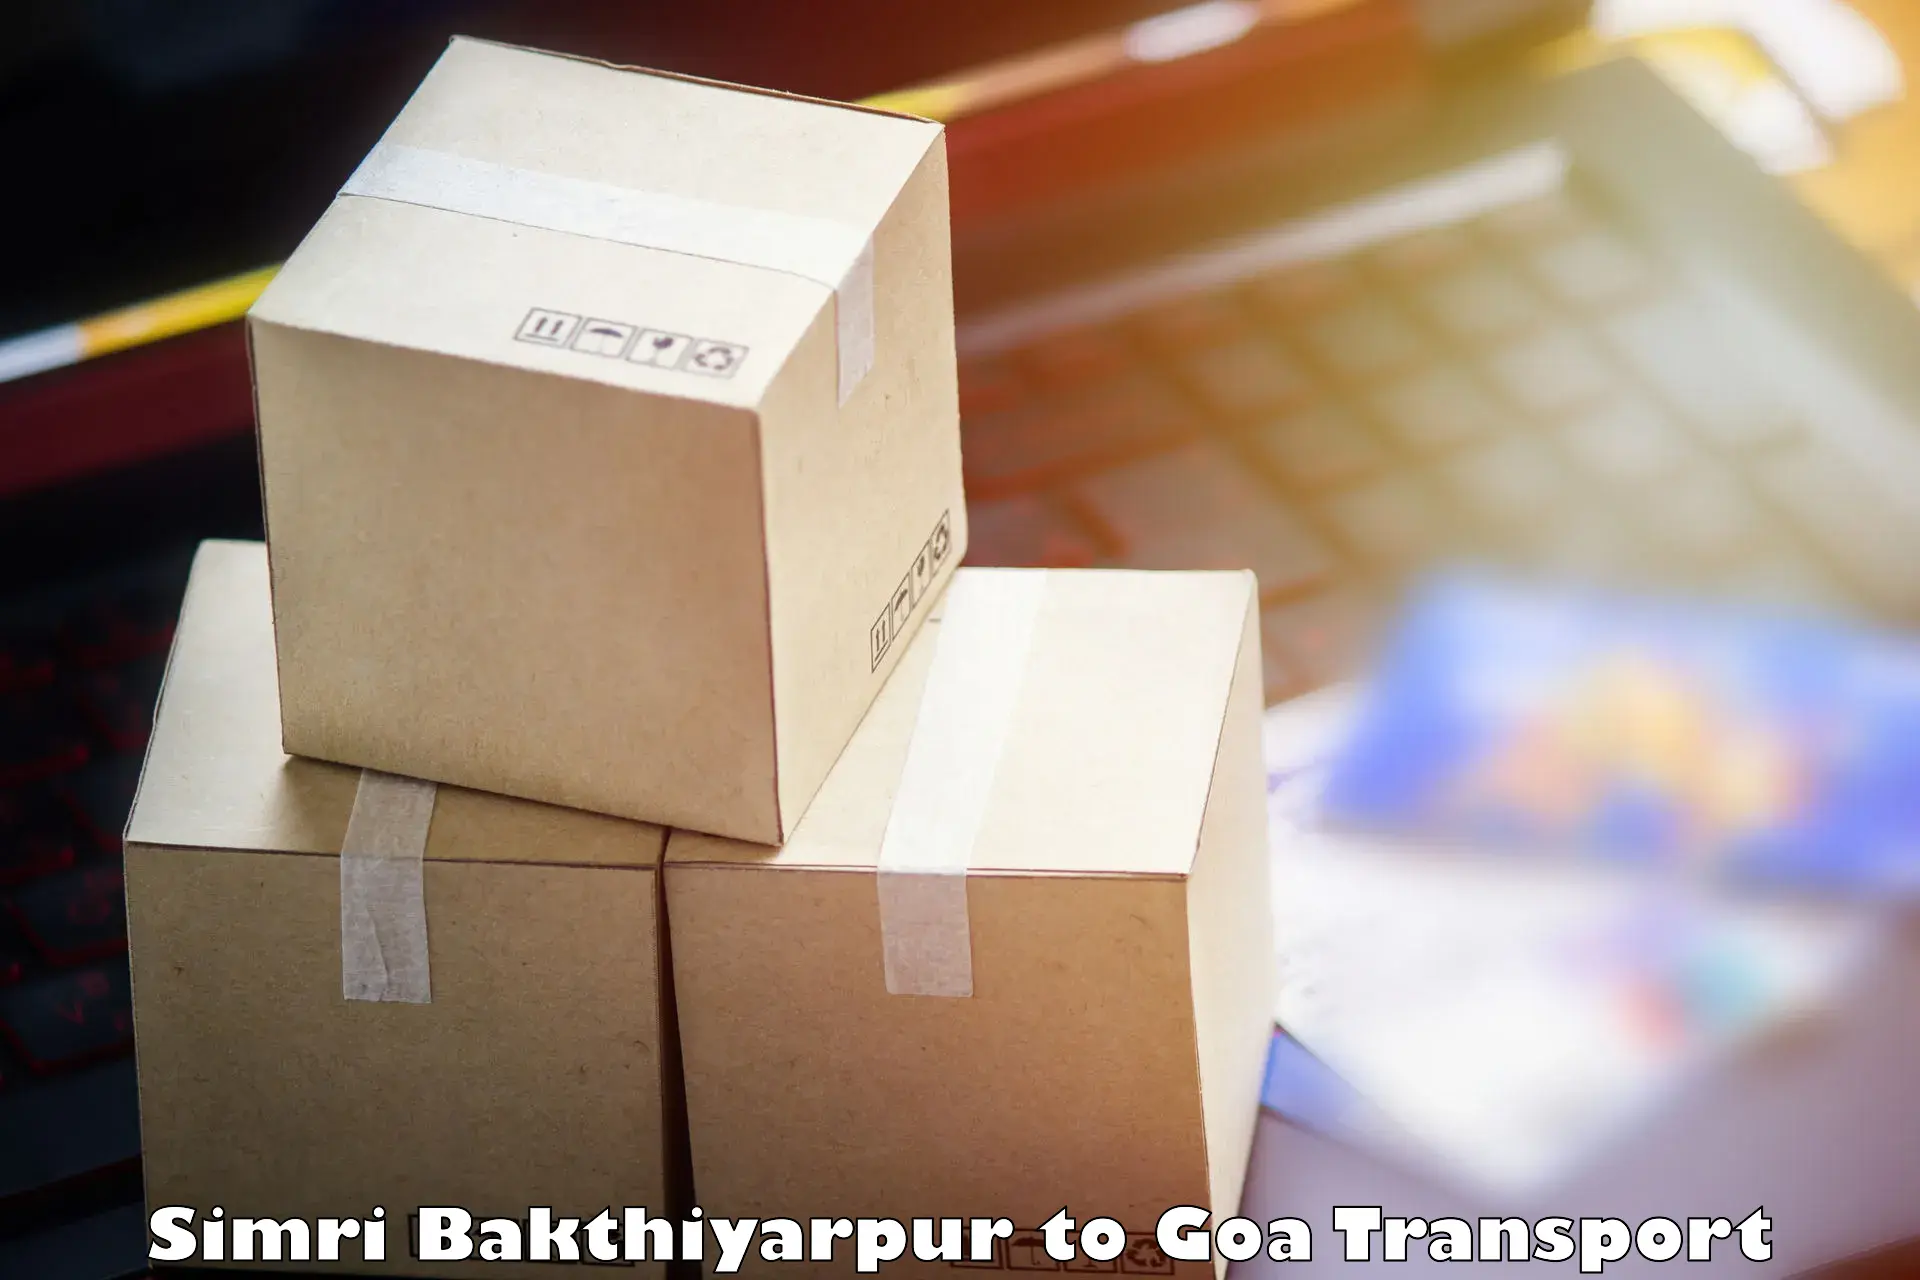 Bike shipping service Simri Bakthiyarpur to Panaji